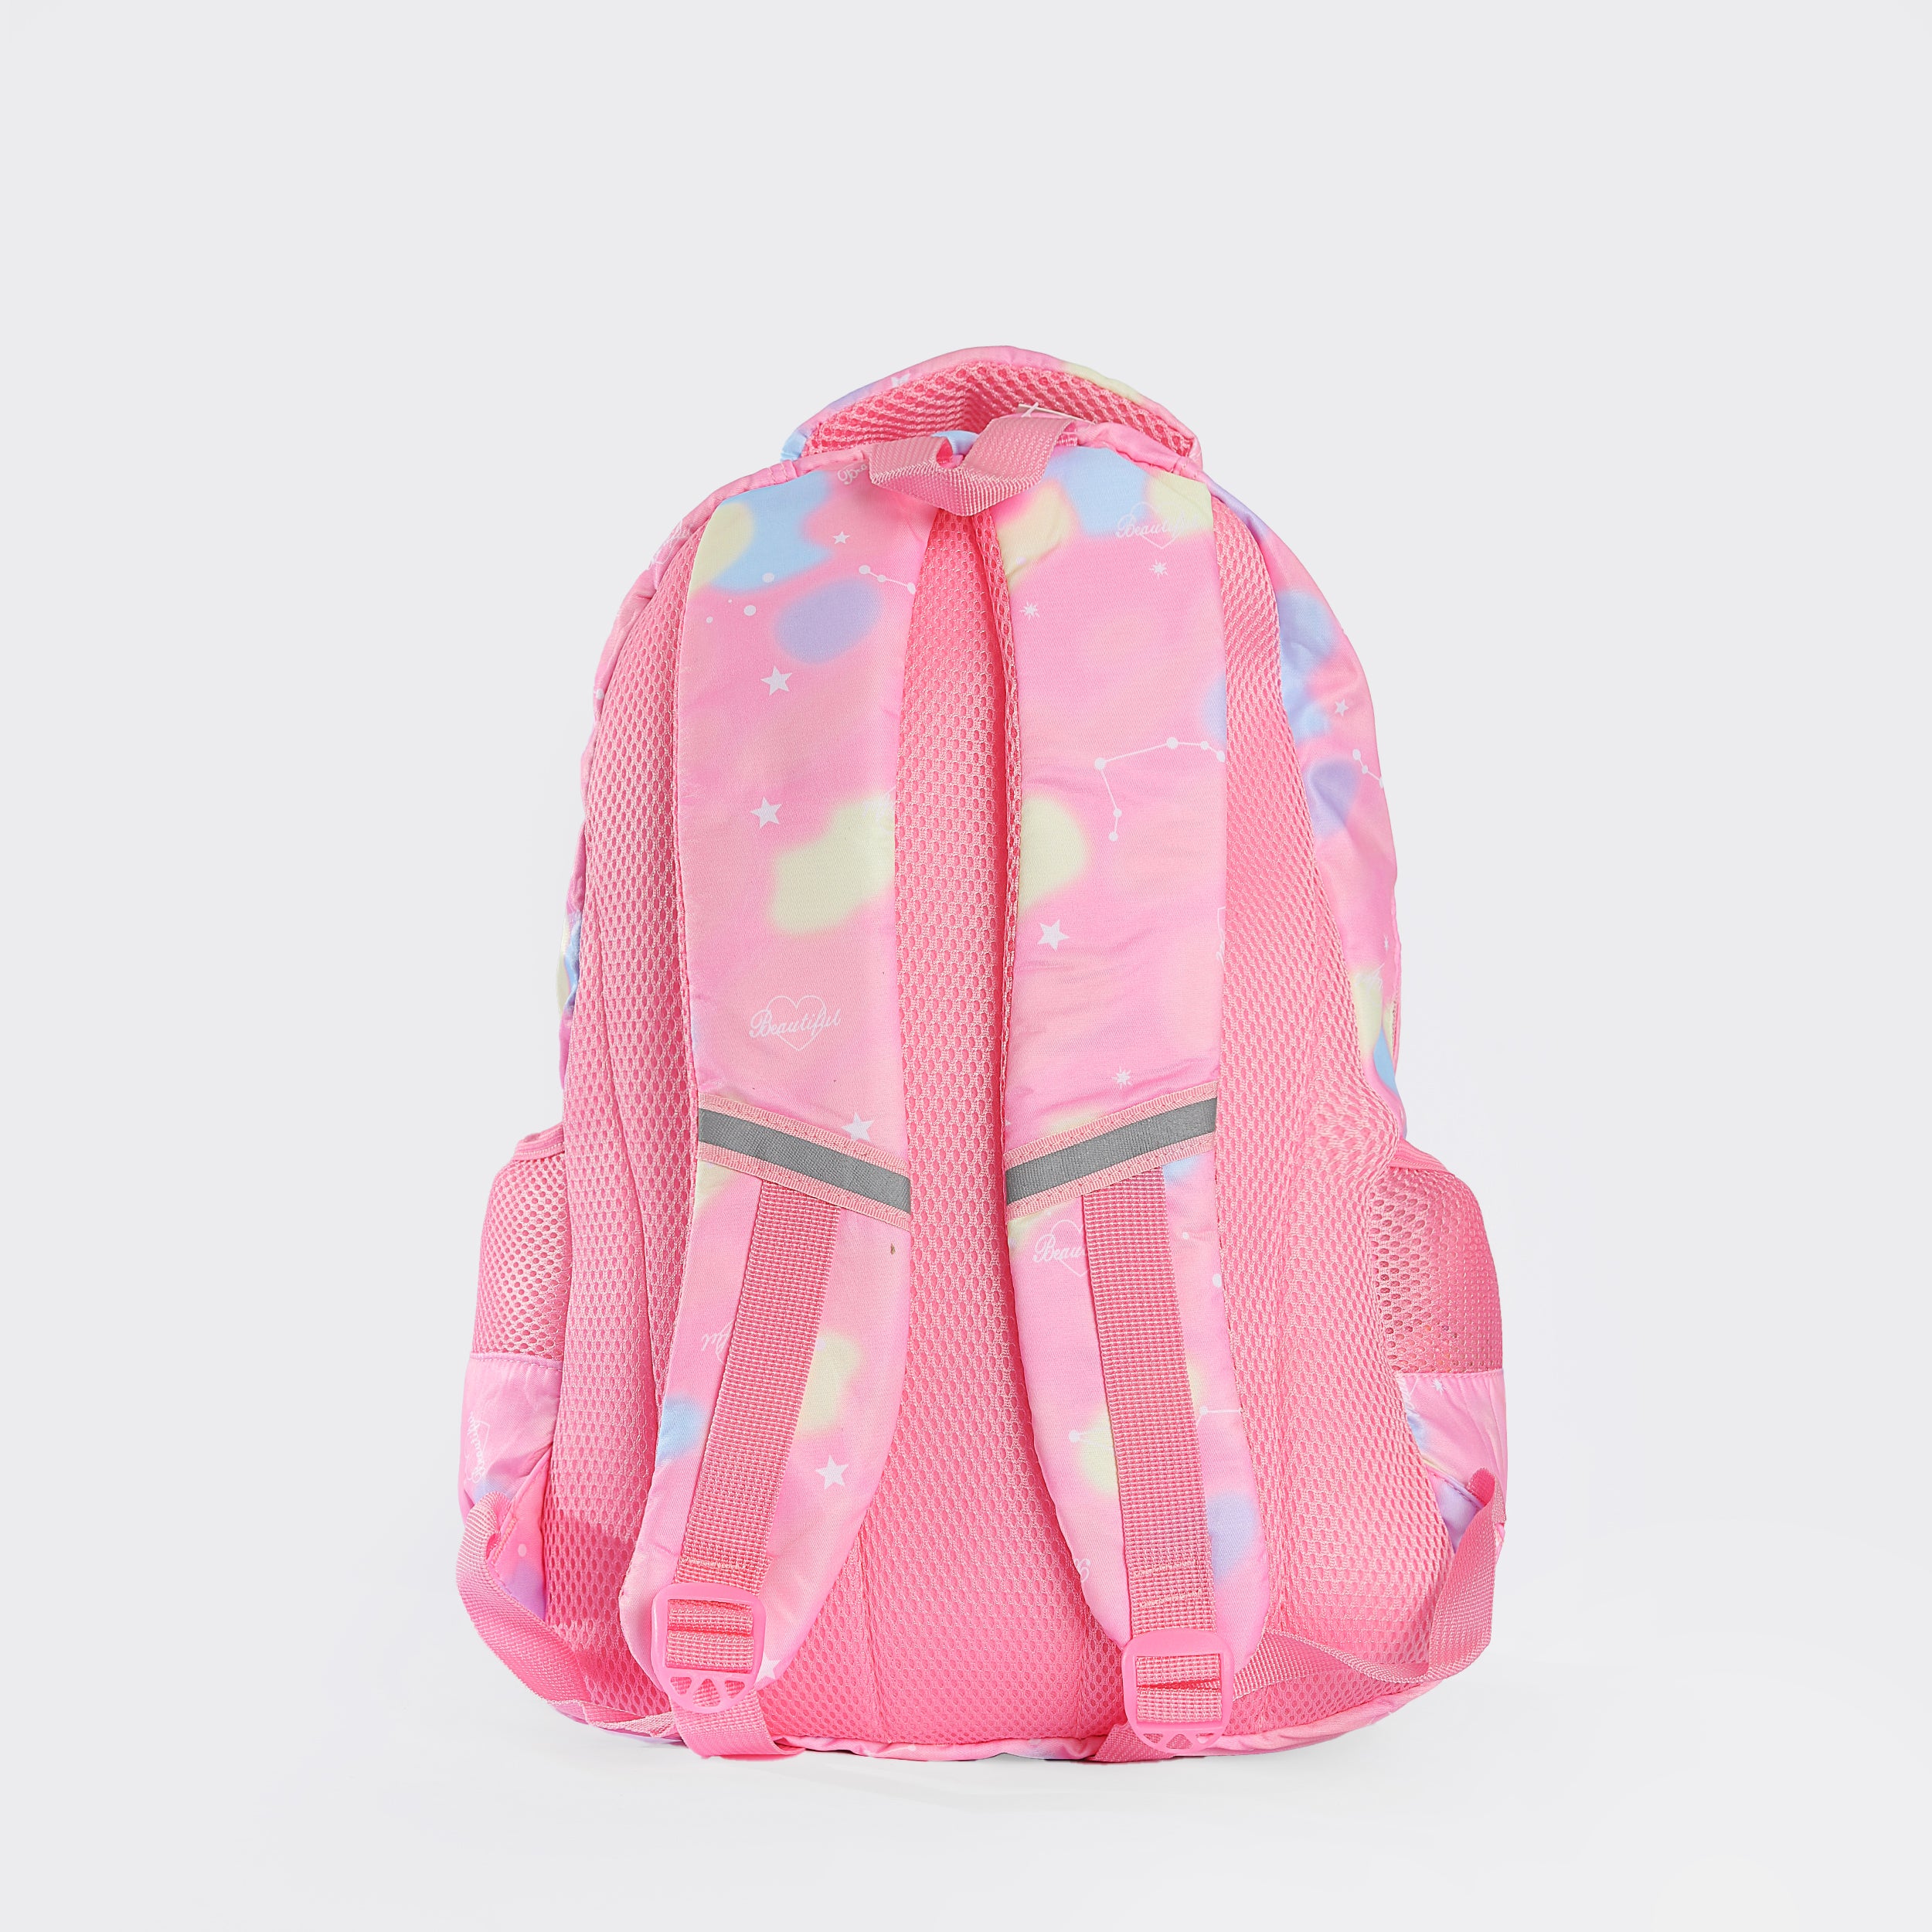 Pink Fantasy School Bag For Kids 18 INCH